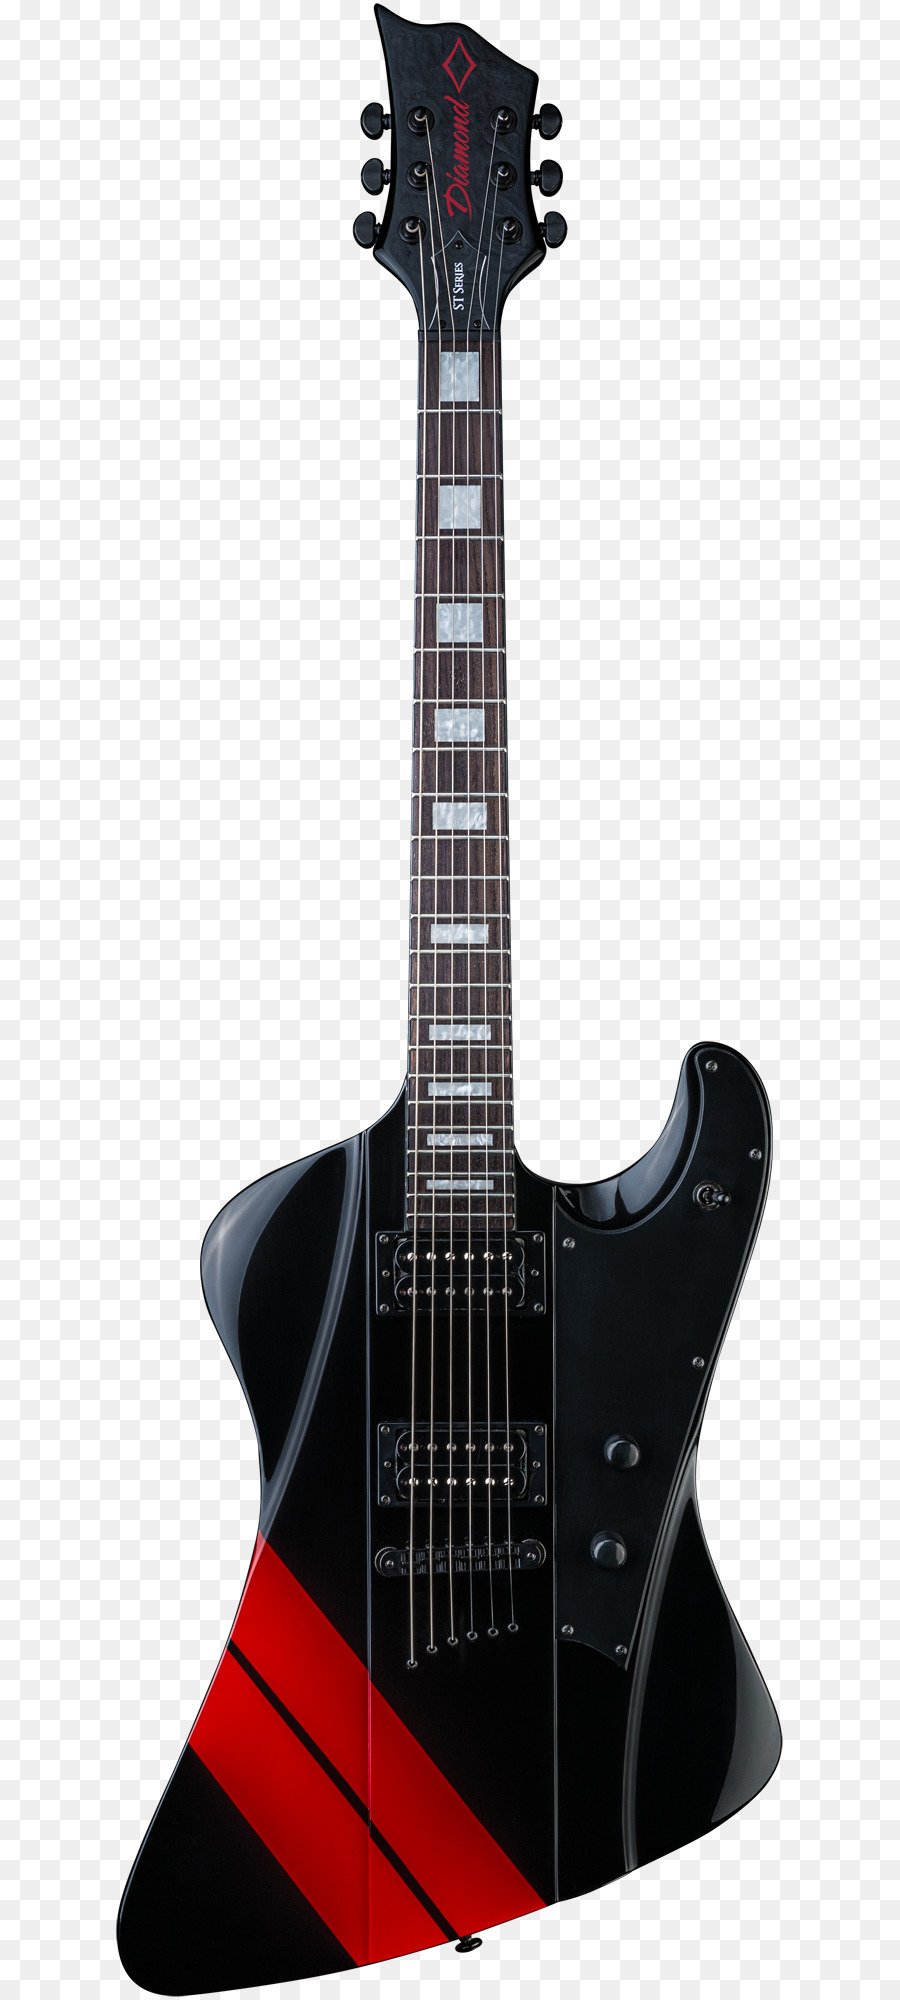 Chitarra elettrica Strumenti Musicali Fender Jaguar Bass guitar - chitarra elettrica